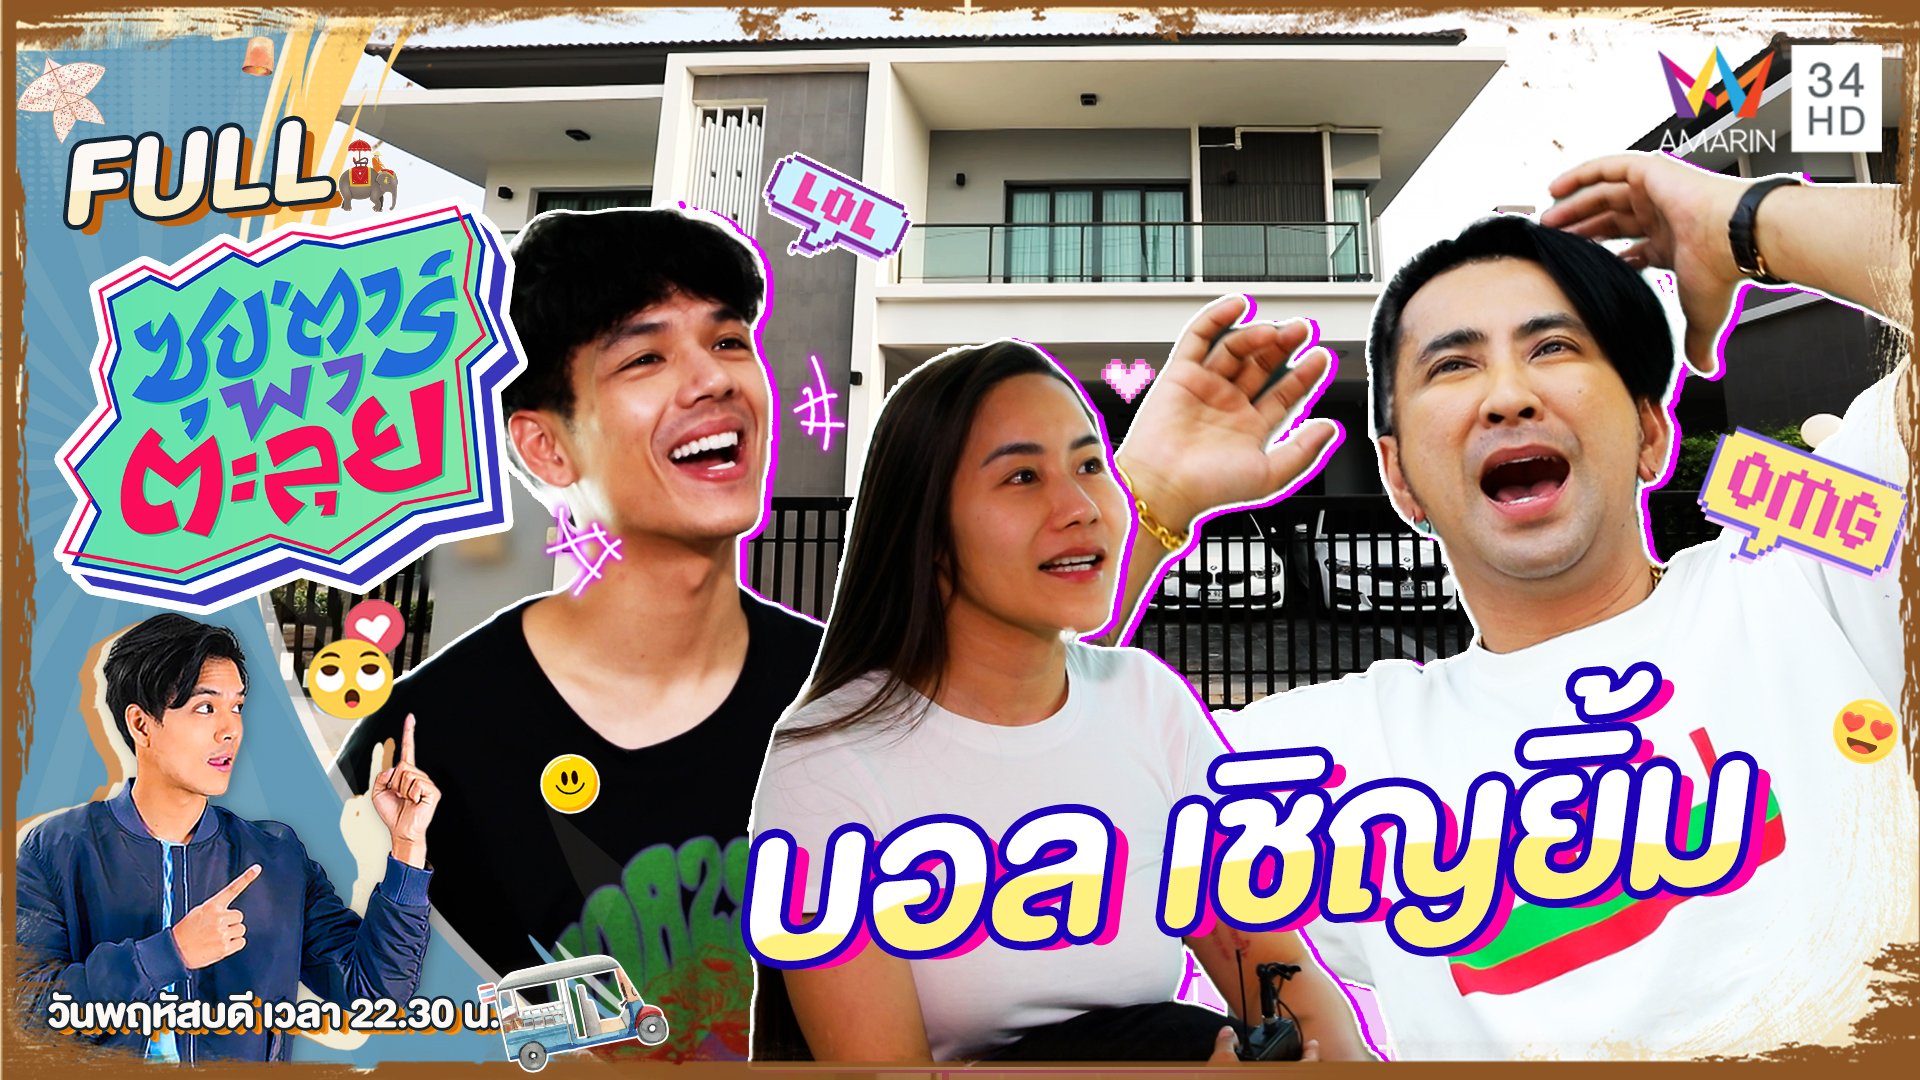 เปิดบ้านสุดหรูของ "บอล เชิญยิ้ม" ตลกแถวหน้าของเมืองไทย | ซุปตาร์พาตะลุย | 11 พ.ค. 66 | AMARIN TVHD34